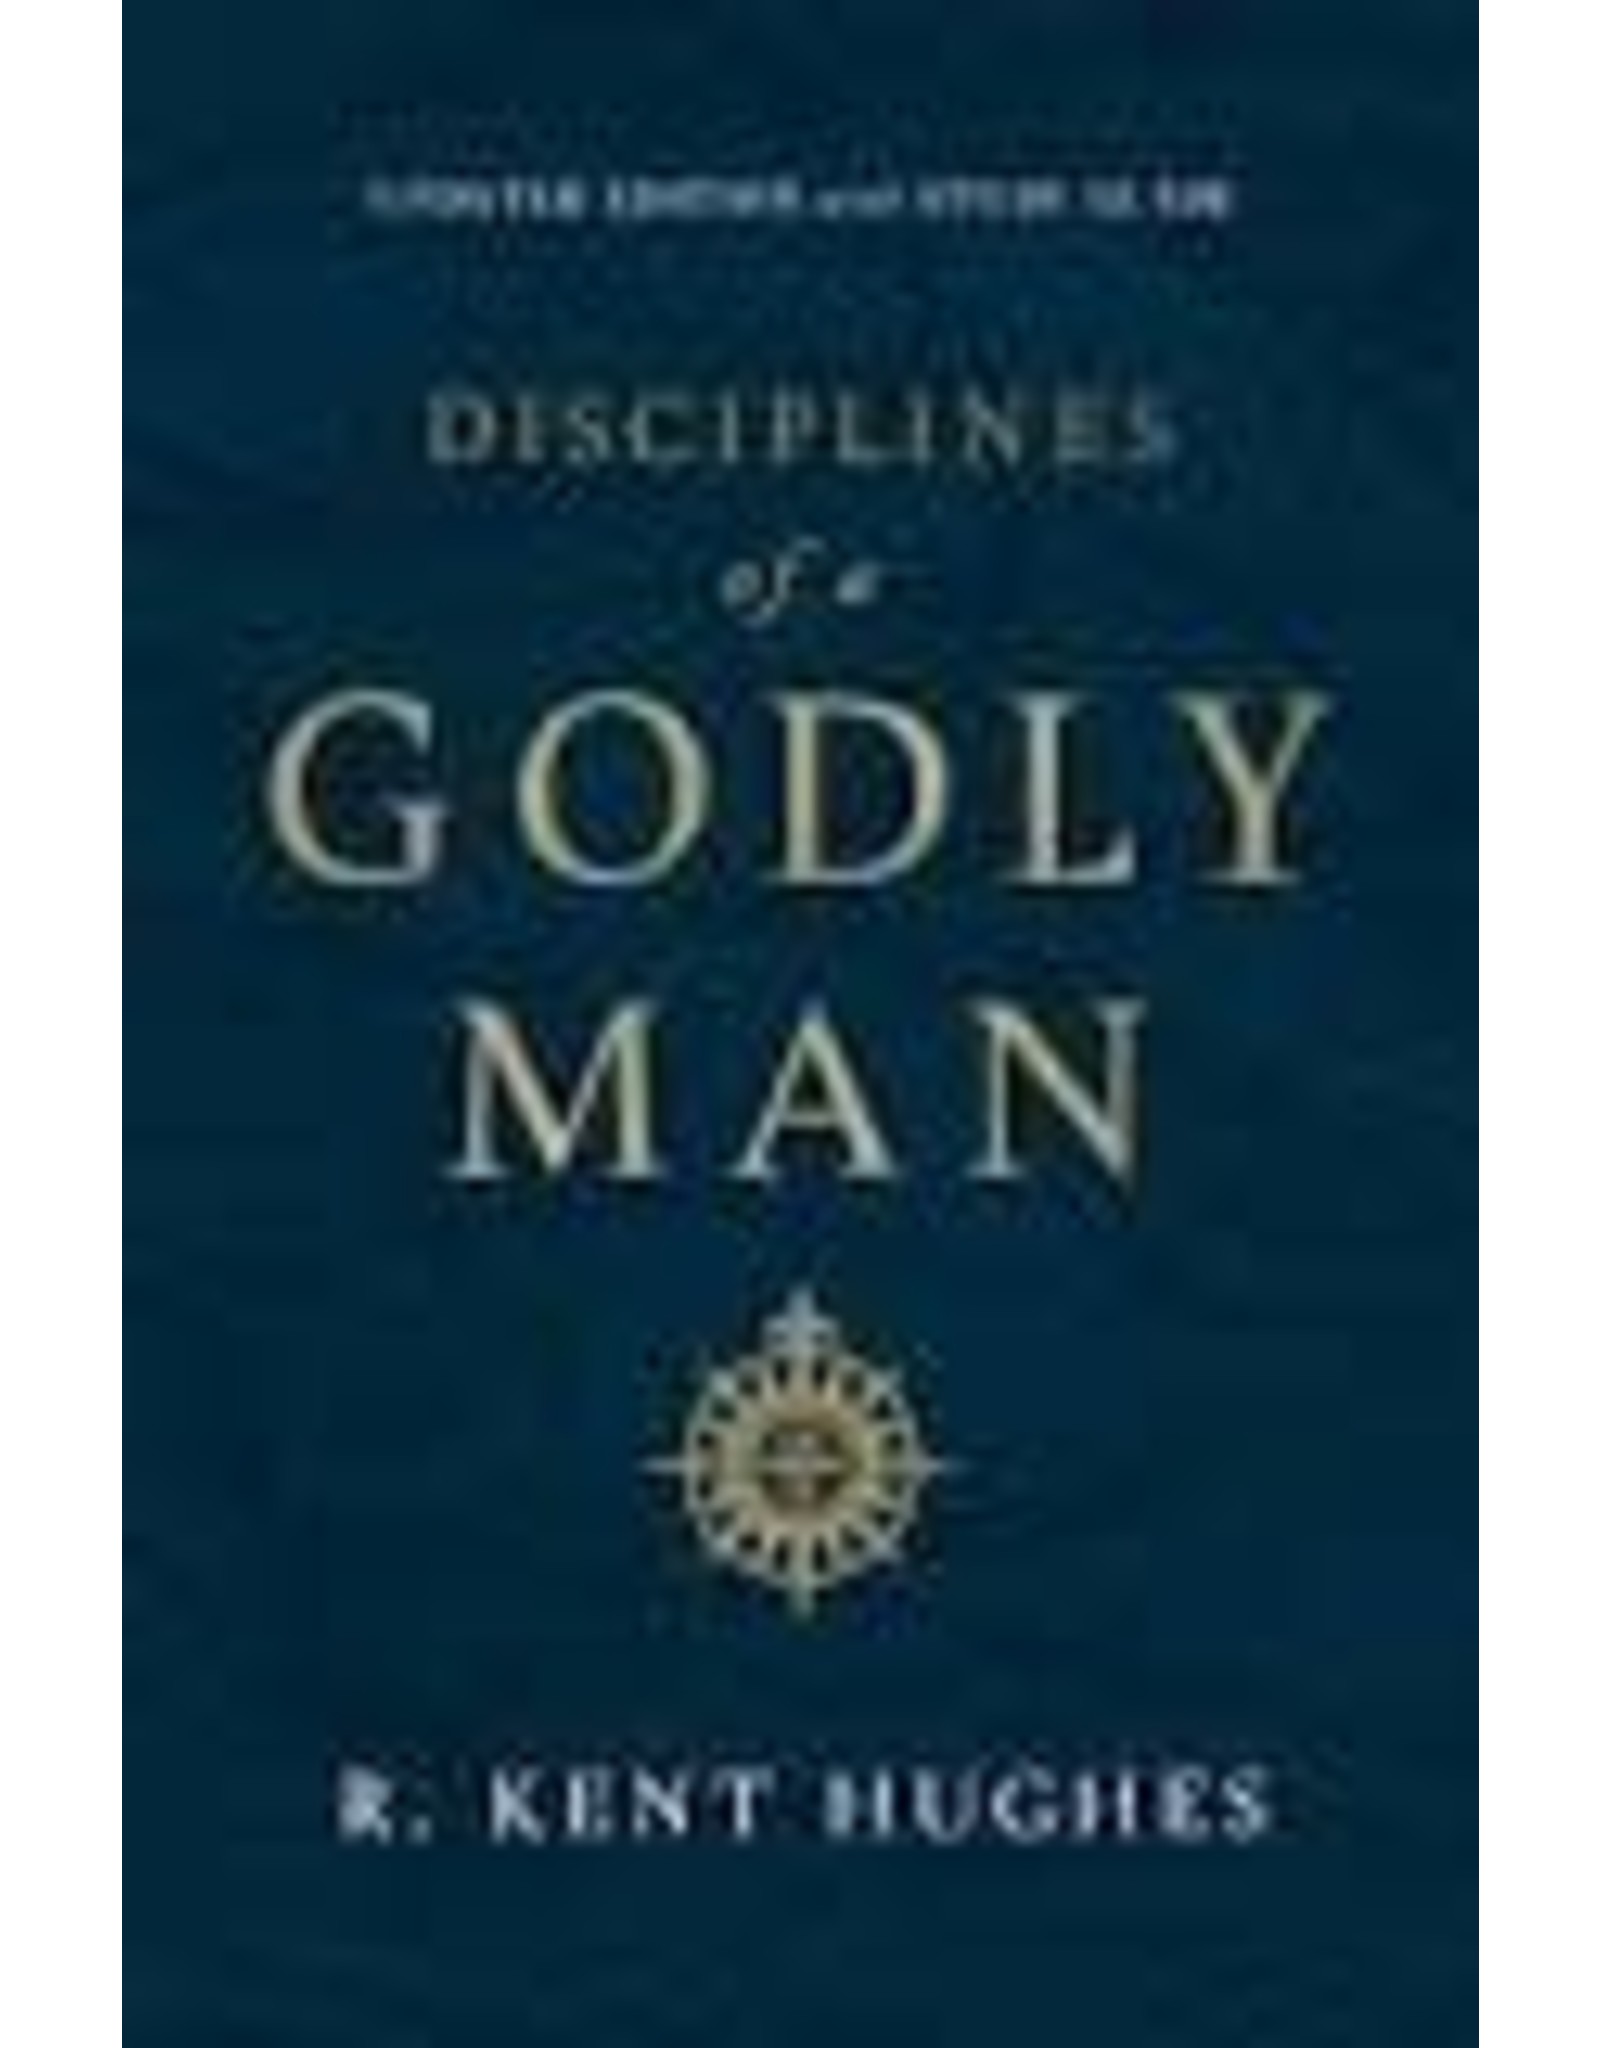 Kent Hughes Disciplines of A Godly Man